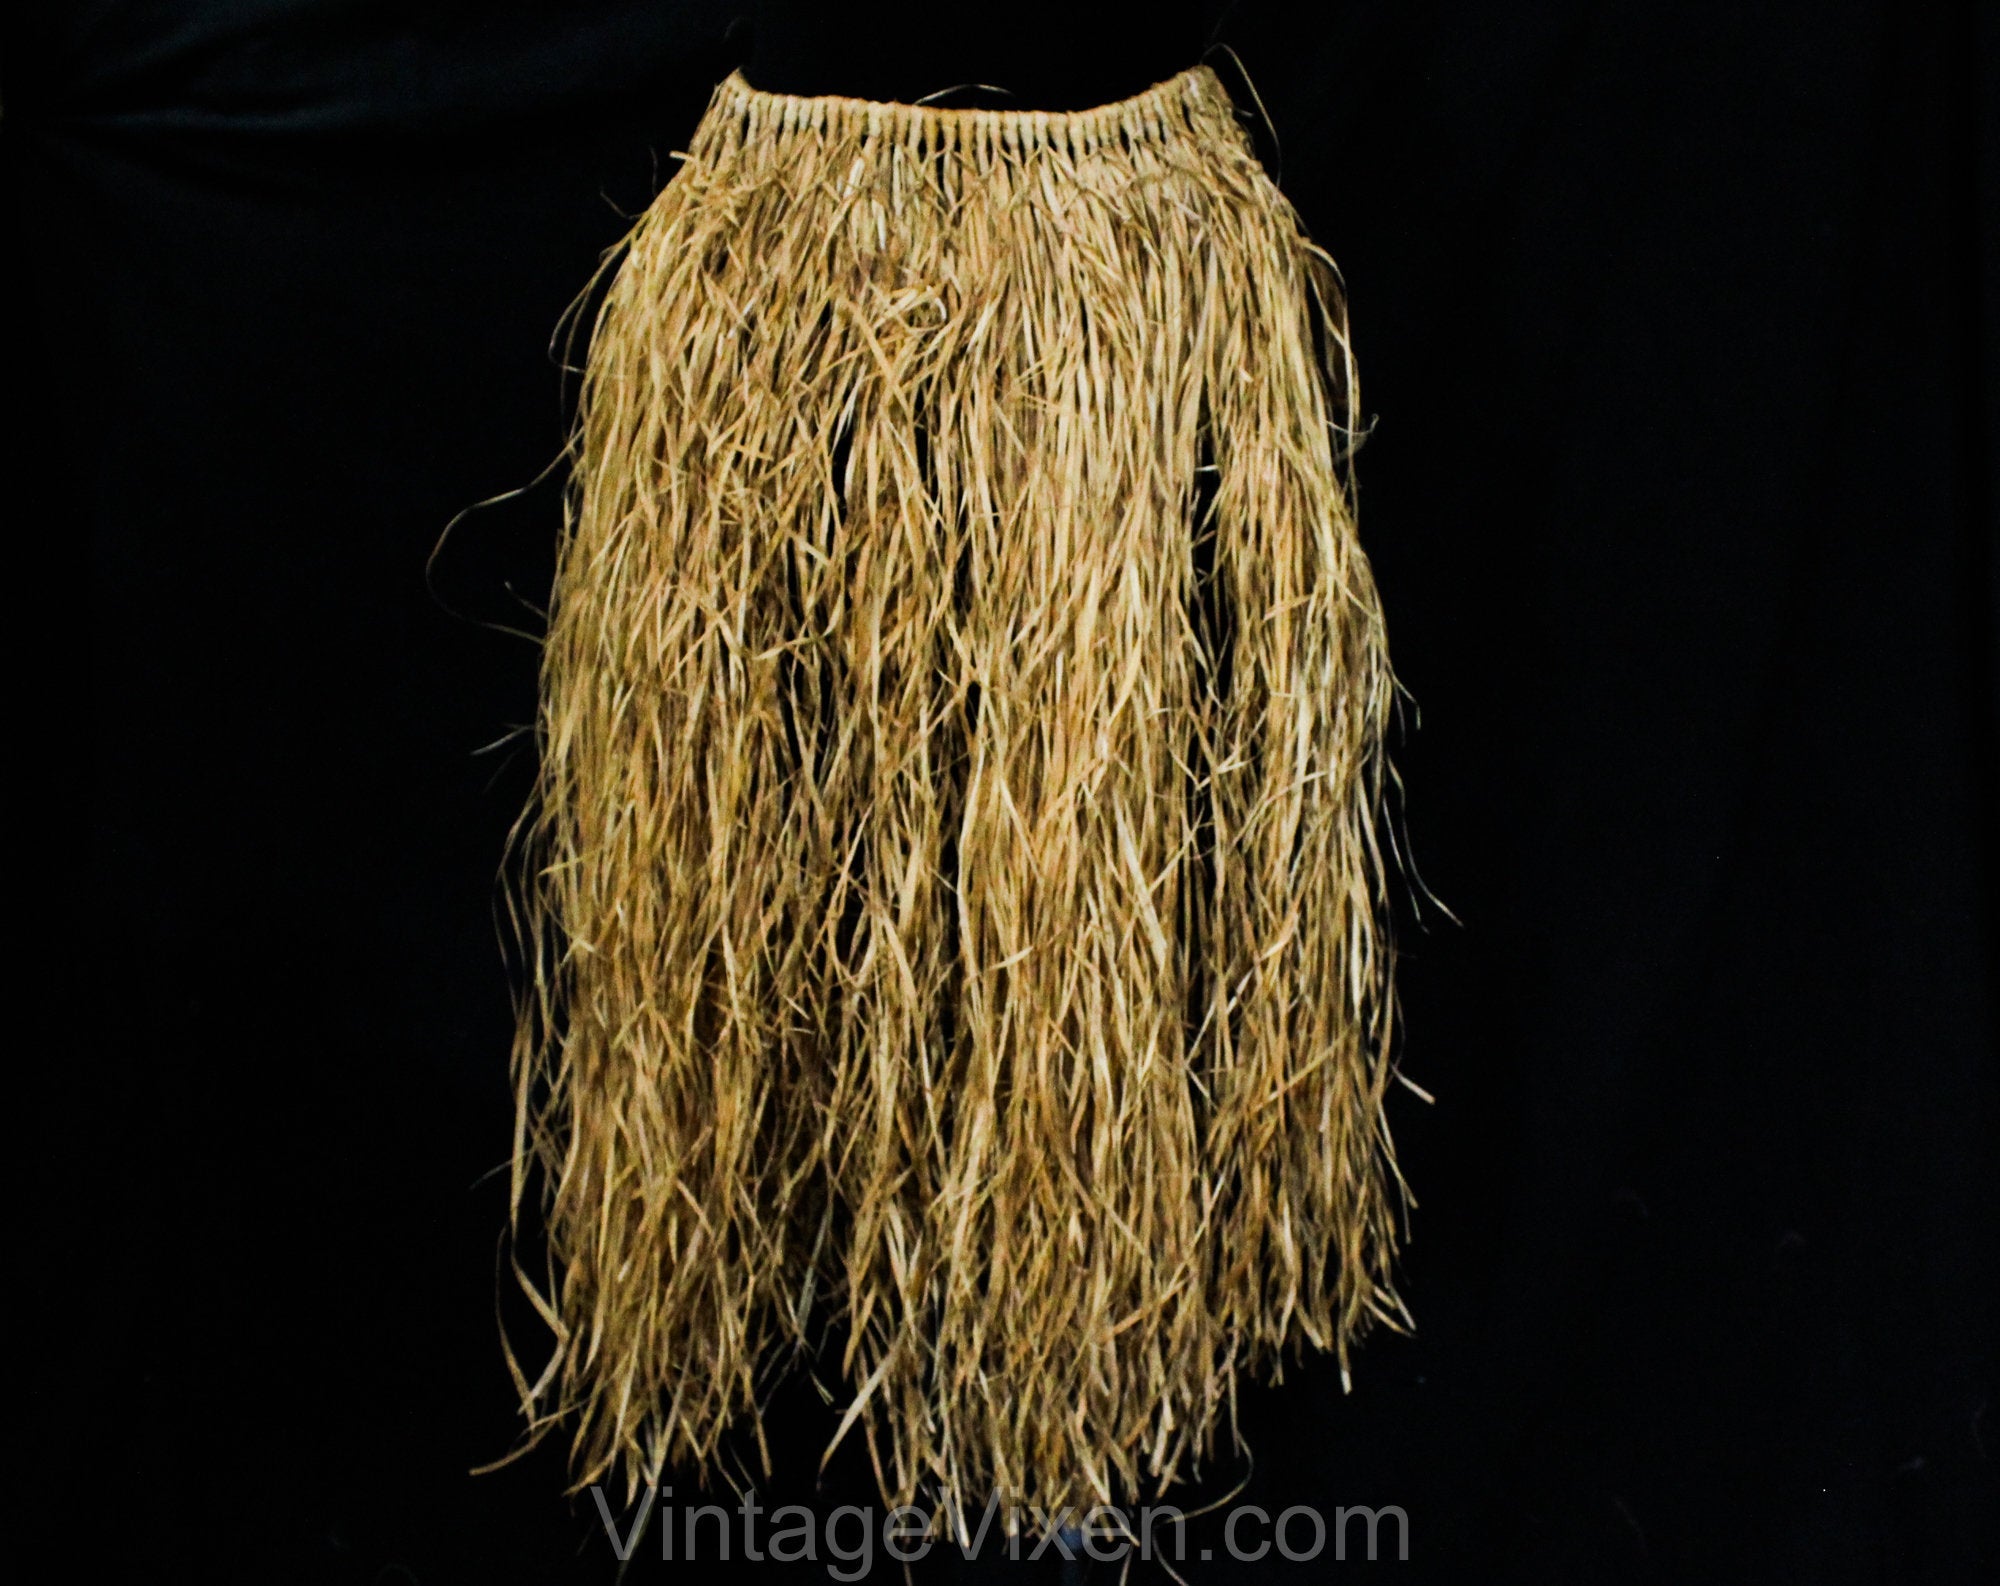 1940's Sassy Hula Girl Grass Skirt Leis TH Hawaii